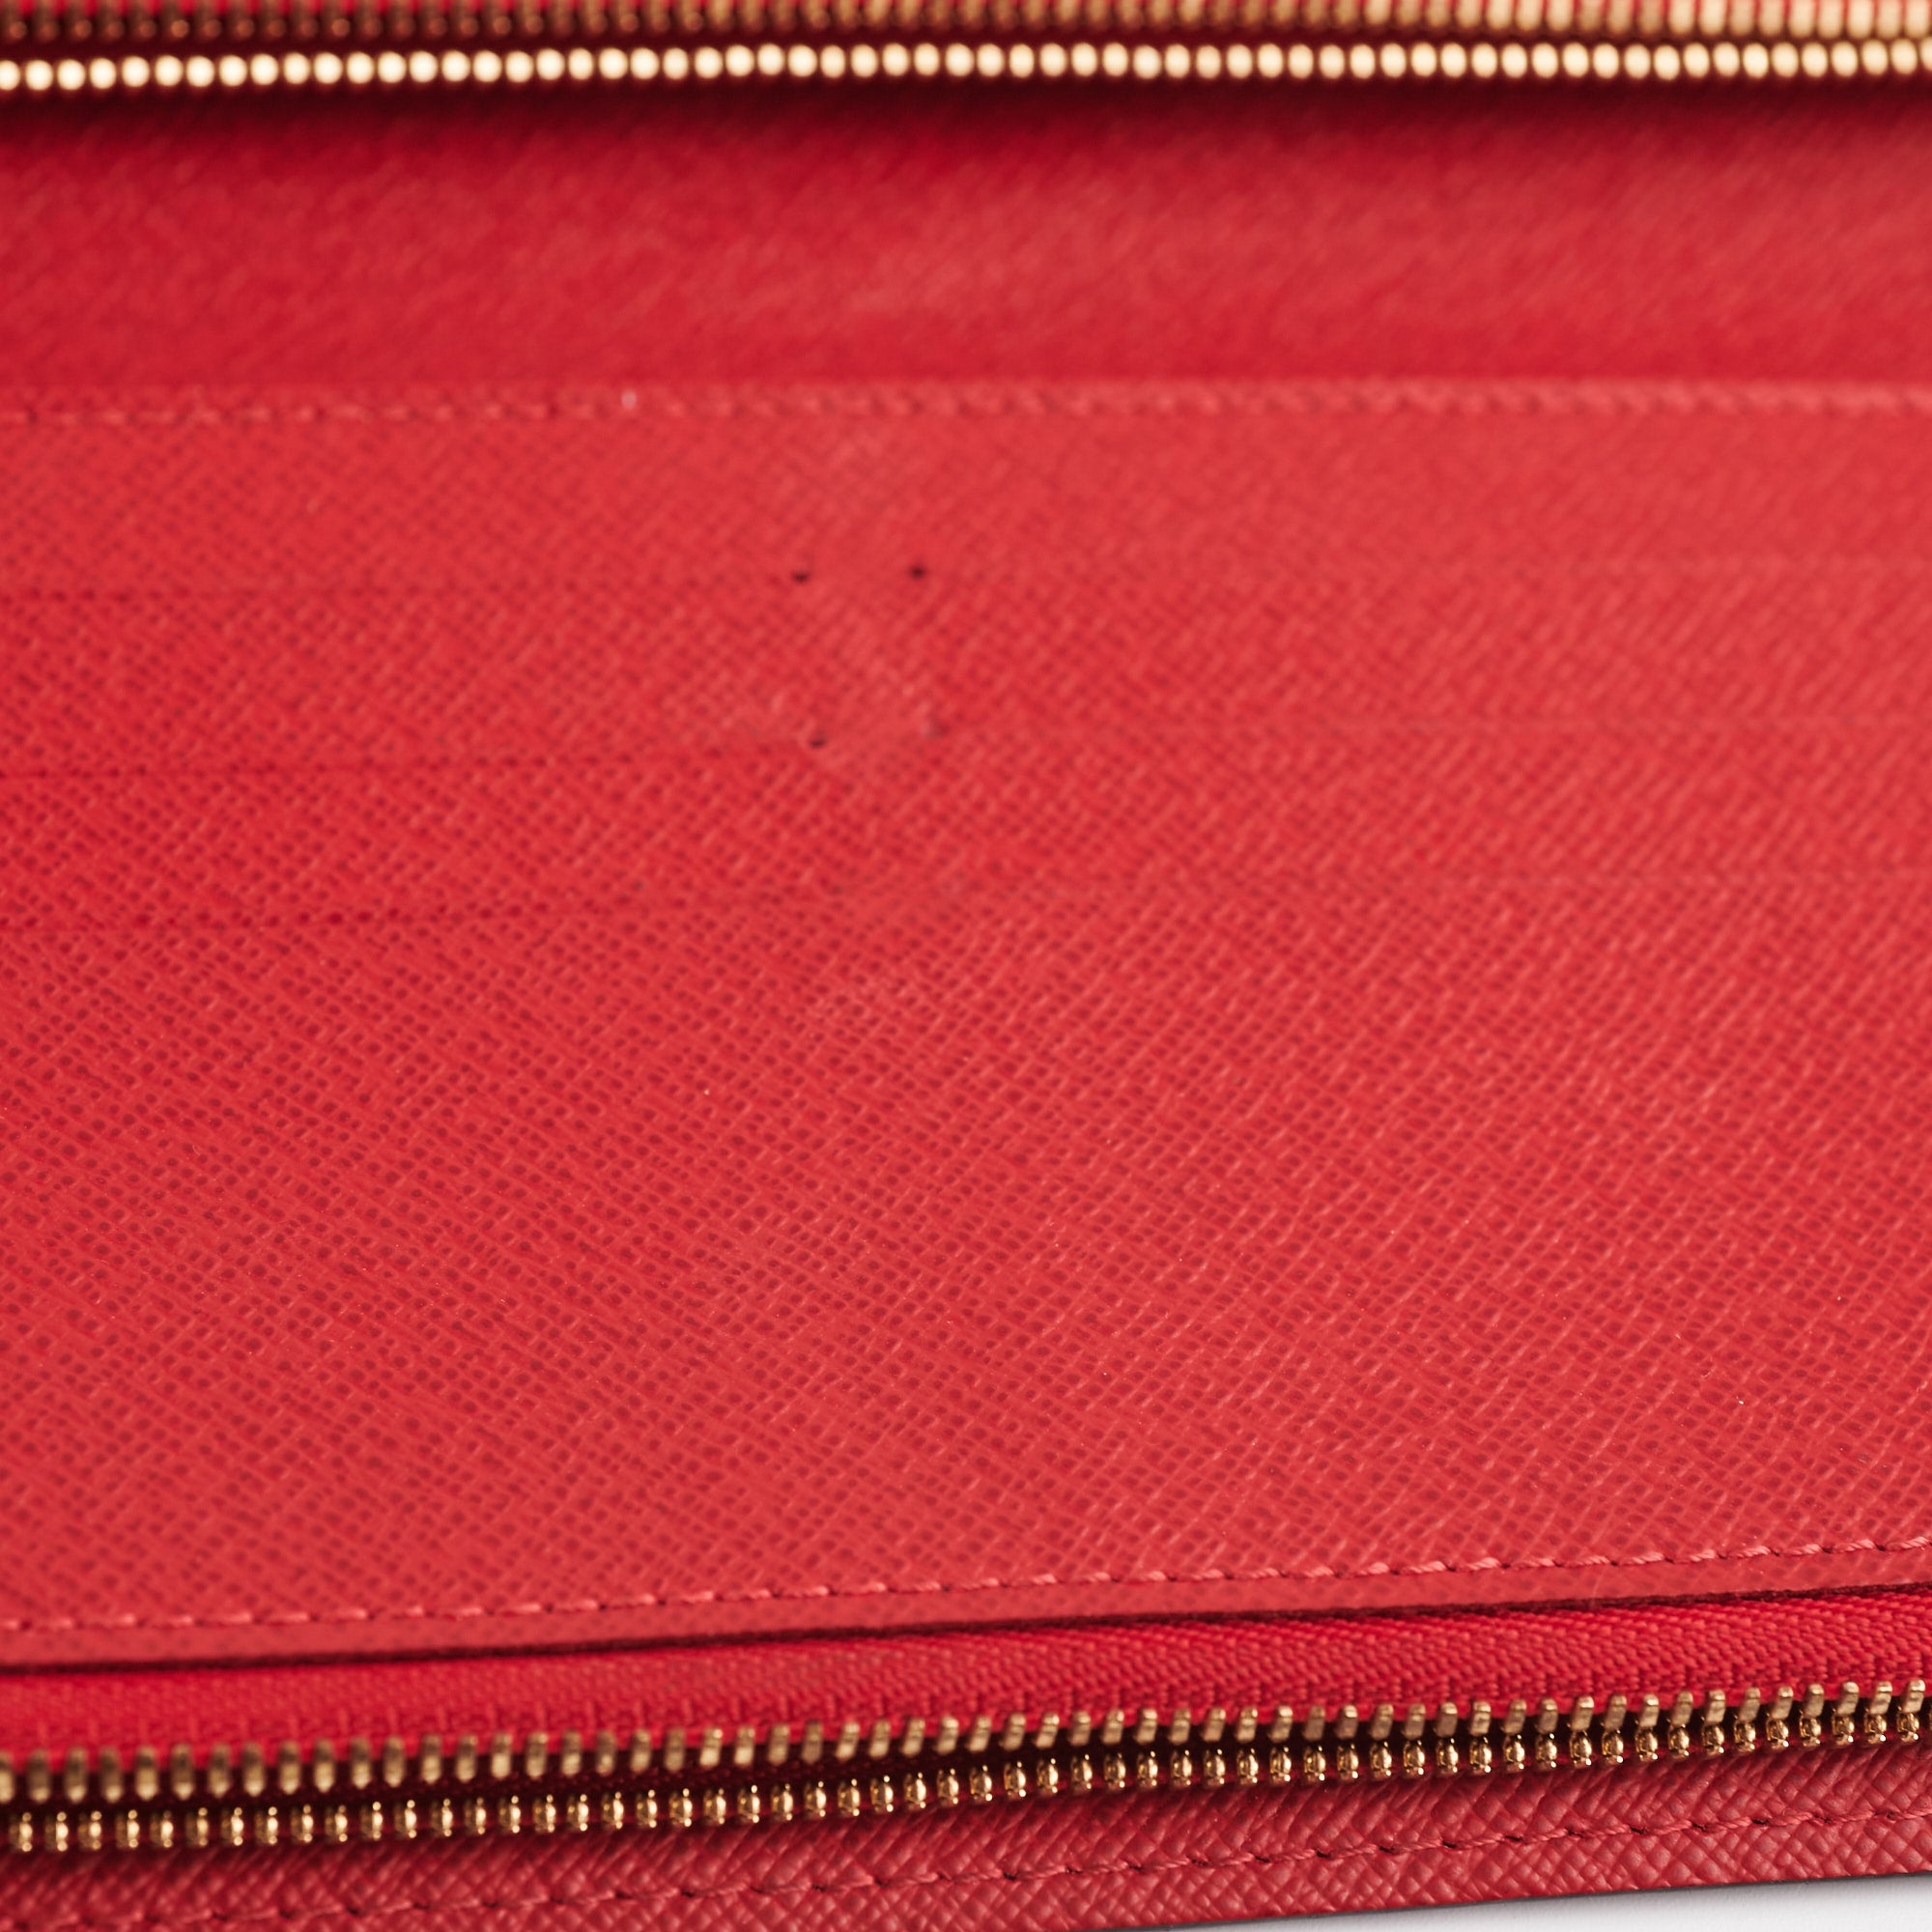 Insolite Wallet Damier Ebene – Keeks Designer Handbags